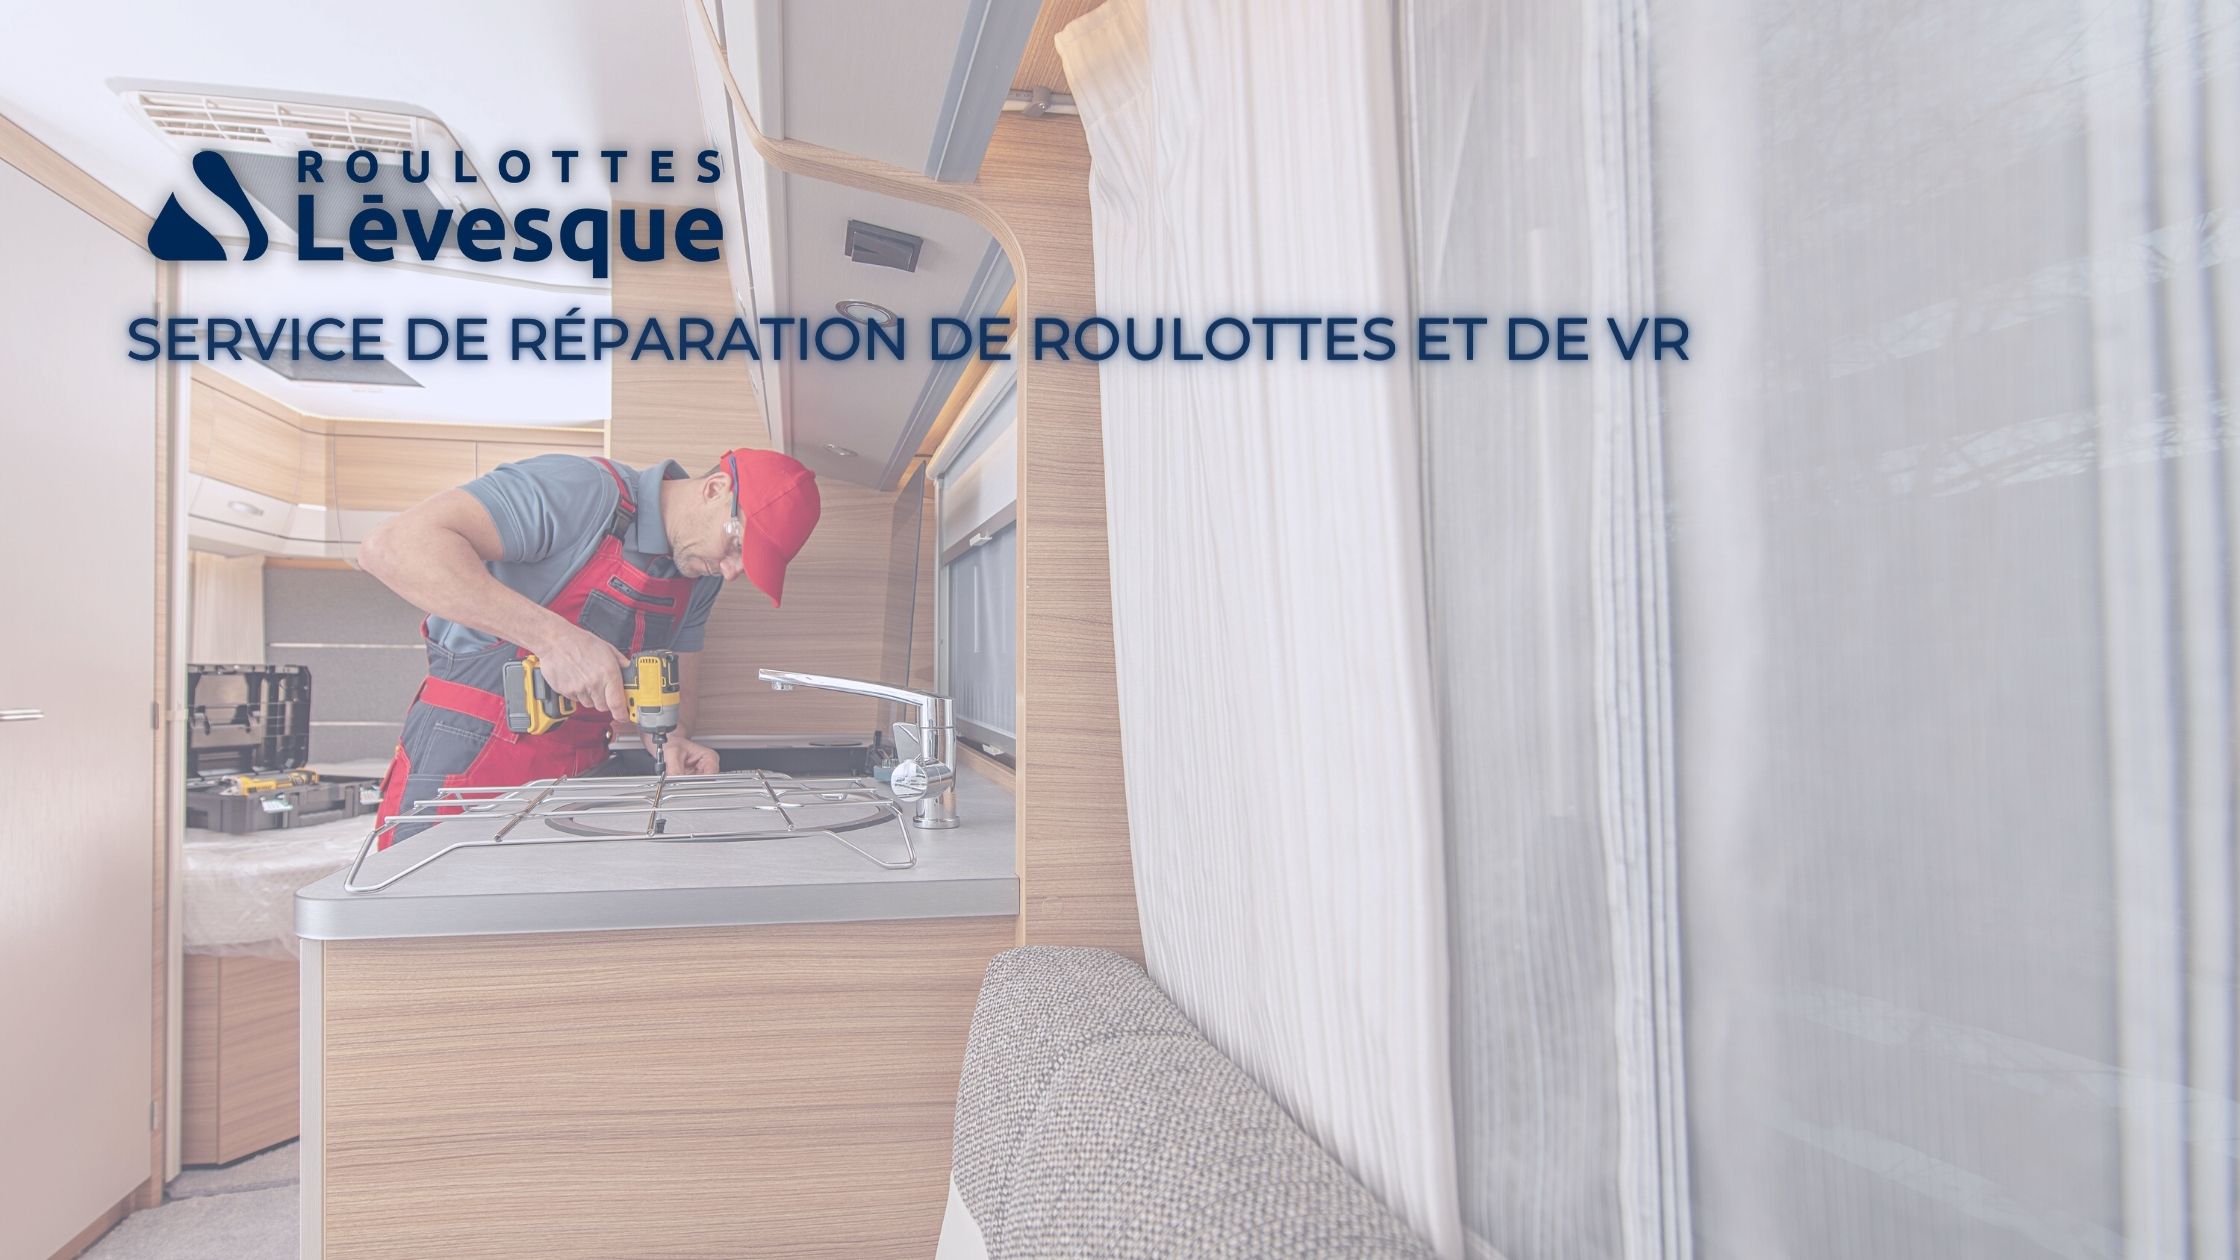 Service de réparation de roulottes et de VR chez Roulottes Lévesque.